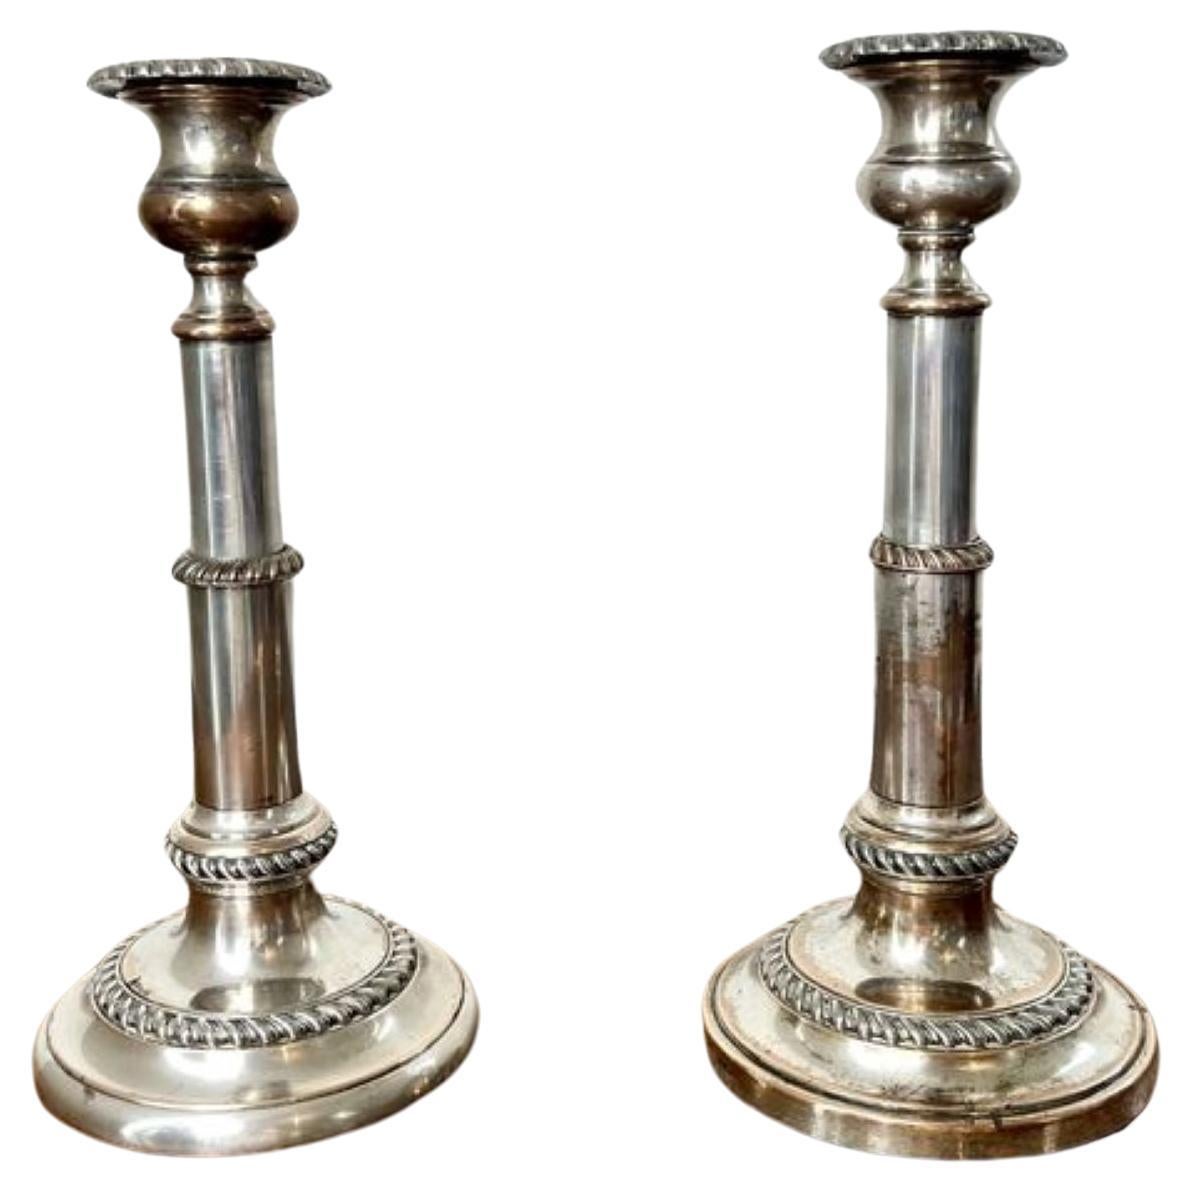 Ein Paar antike, teleskopische George III.-Kerzenständer 